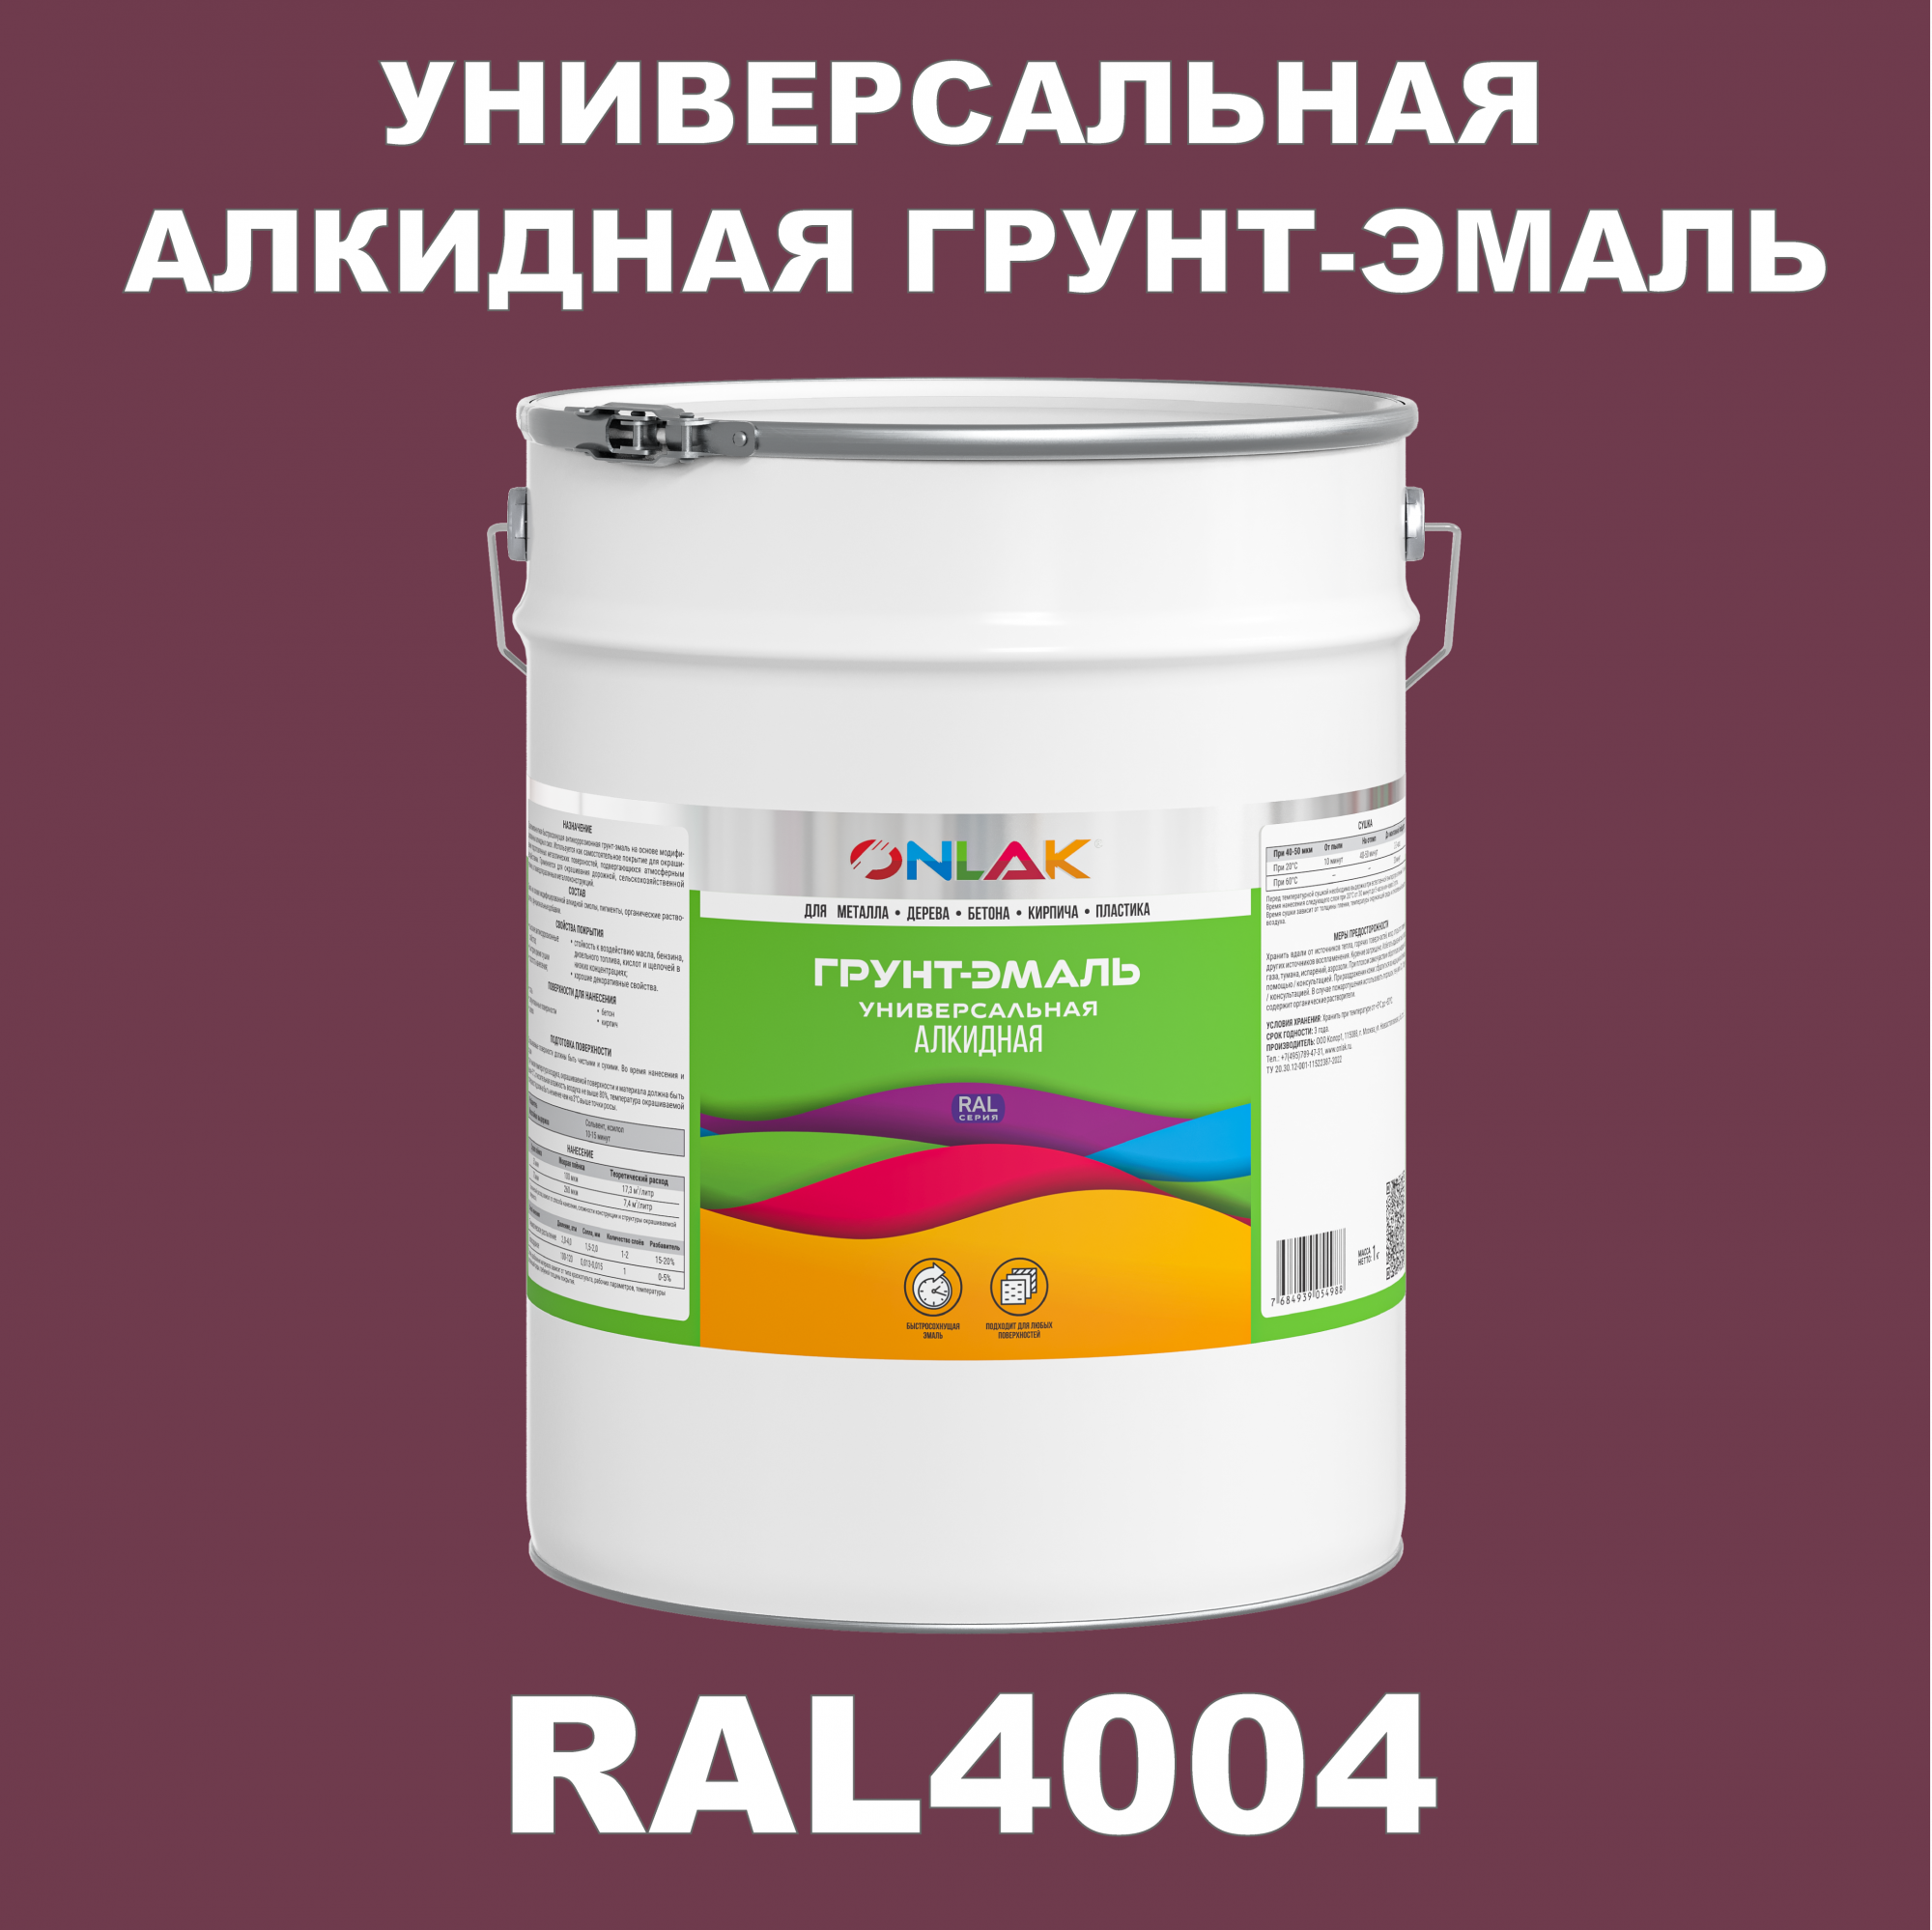 Грунт-эмаль ONLAK 1К RAL4004 антикоррозионная алкидная по металлу по ржавчине 20 кг антикоррозионная грунт эмаль onlak ral 4005 фиолетовый 662 мл